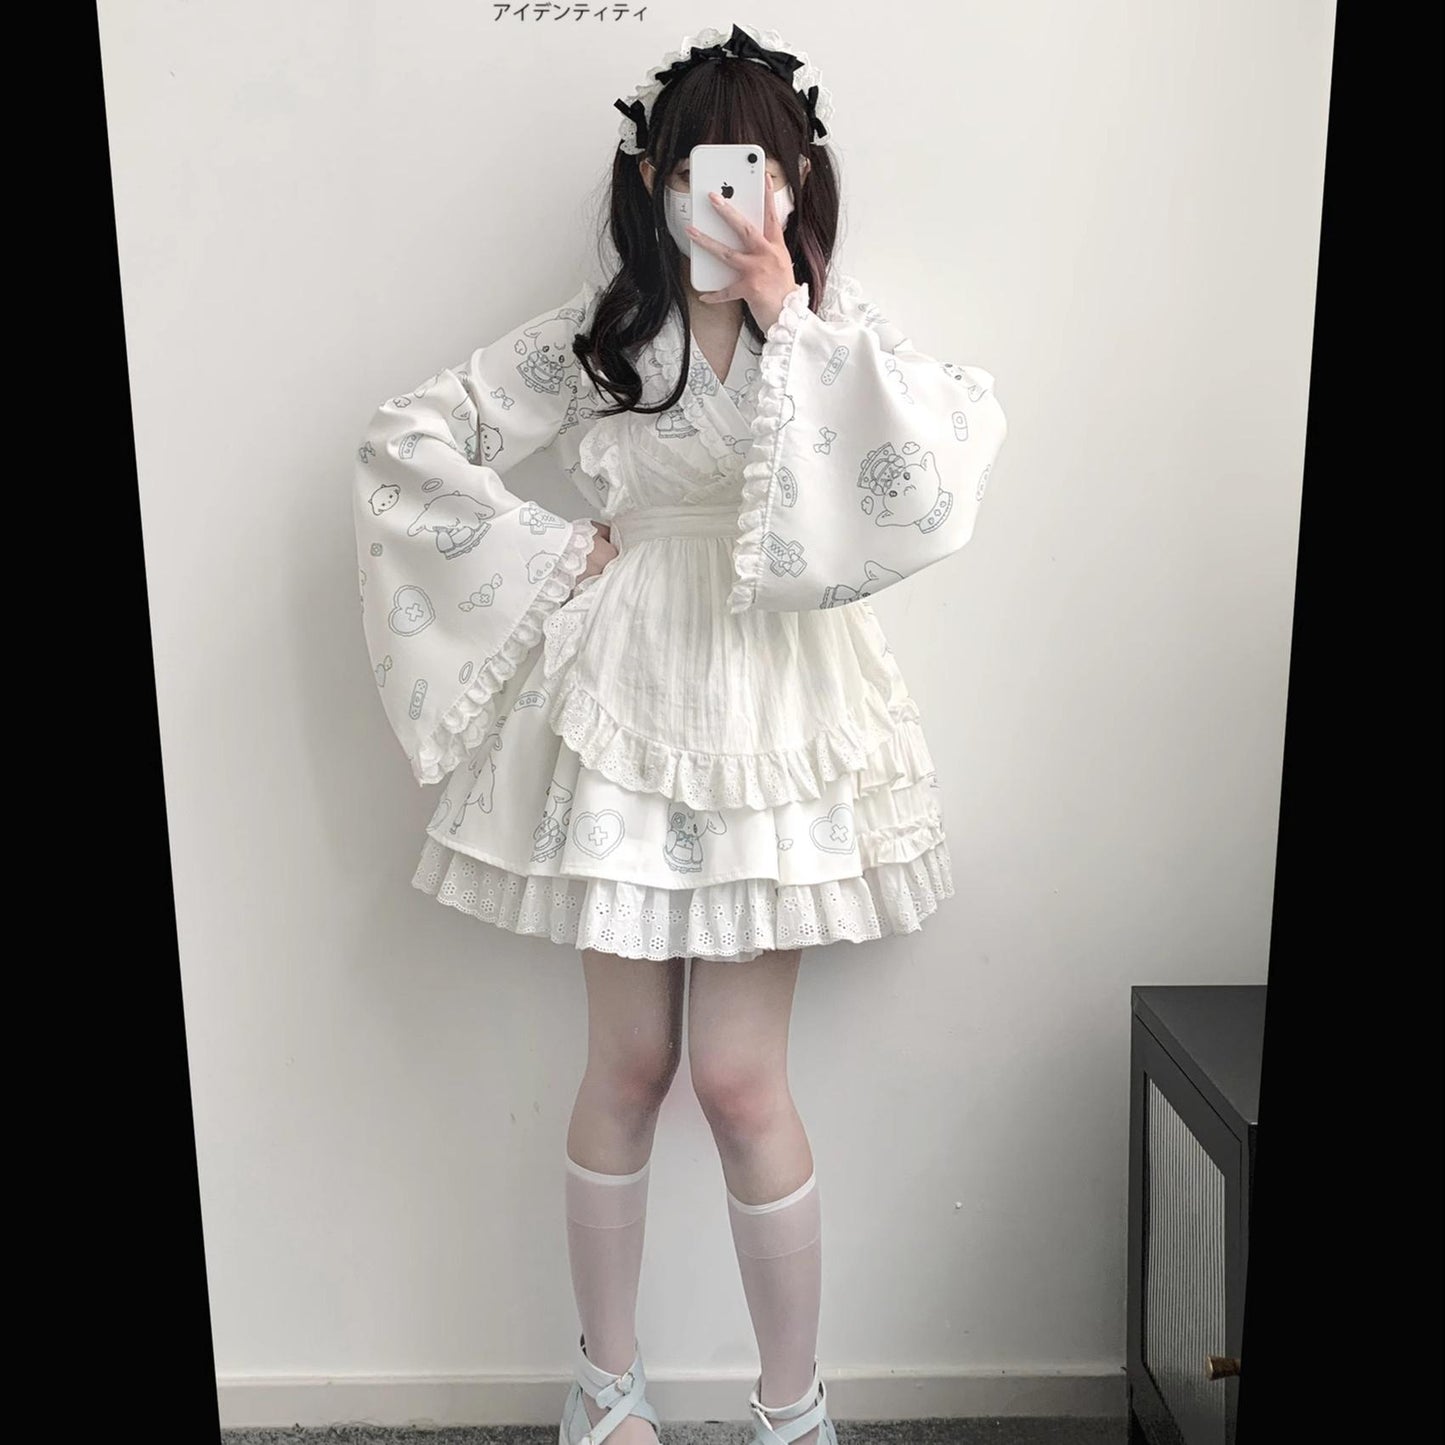 Tenshi Kaiwai Patchwork Skirt Kimono Top White Apron Three-Piece Set 36786:536840